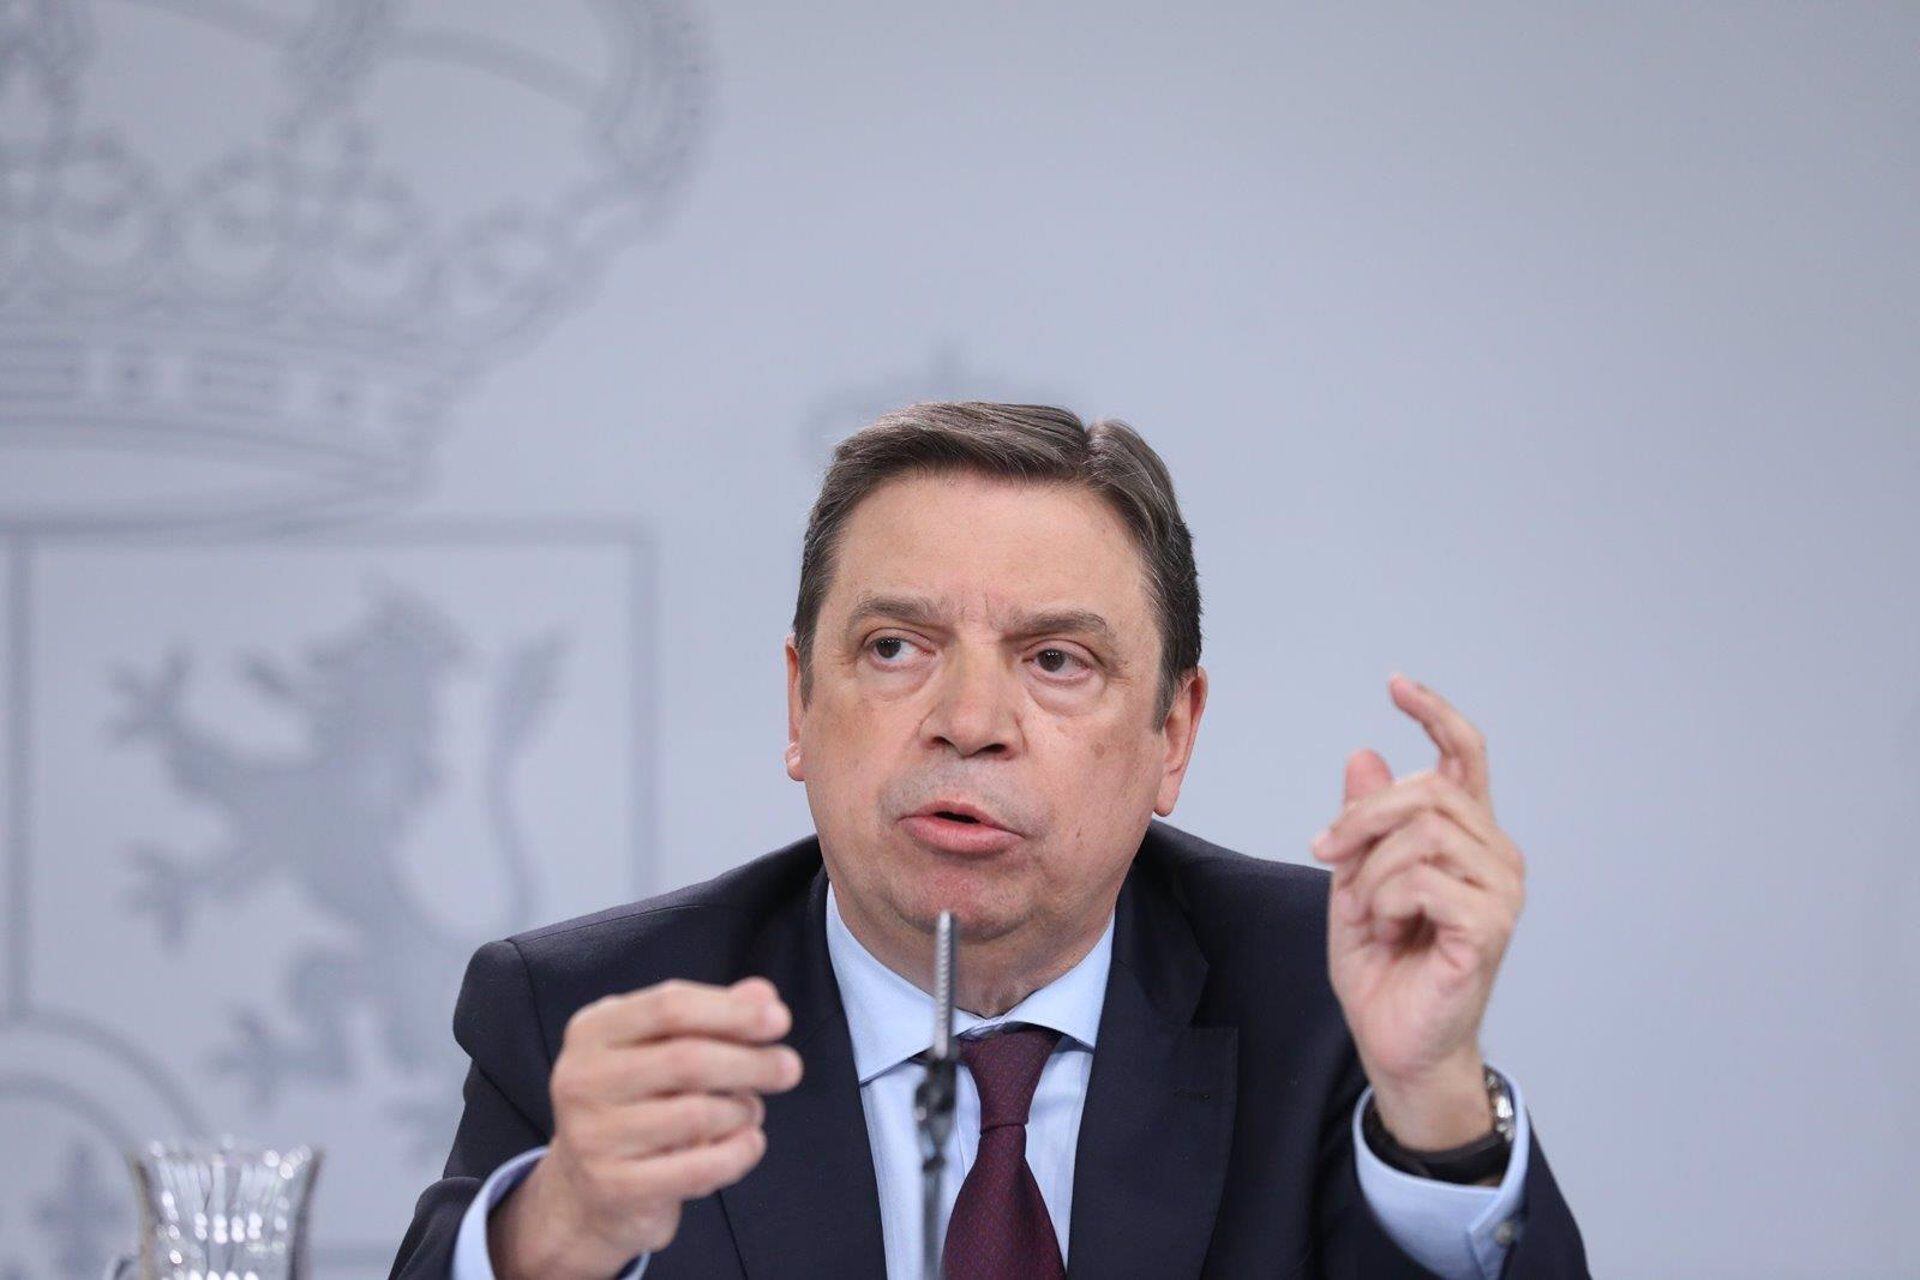  El ministro de Agricultura, Luis Planas, en una imagen de archivo (MARTA FERNÁNDEZ JARA/EUROPA PRESS)
